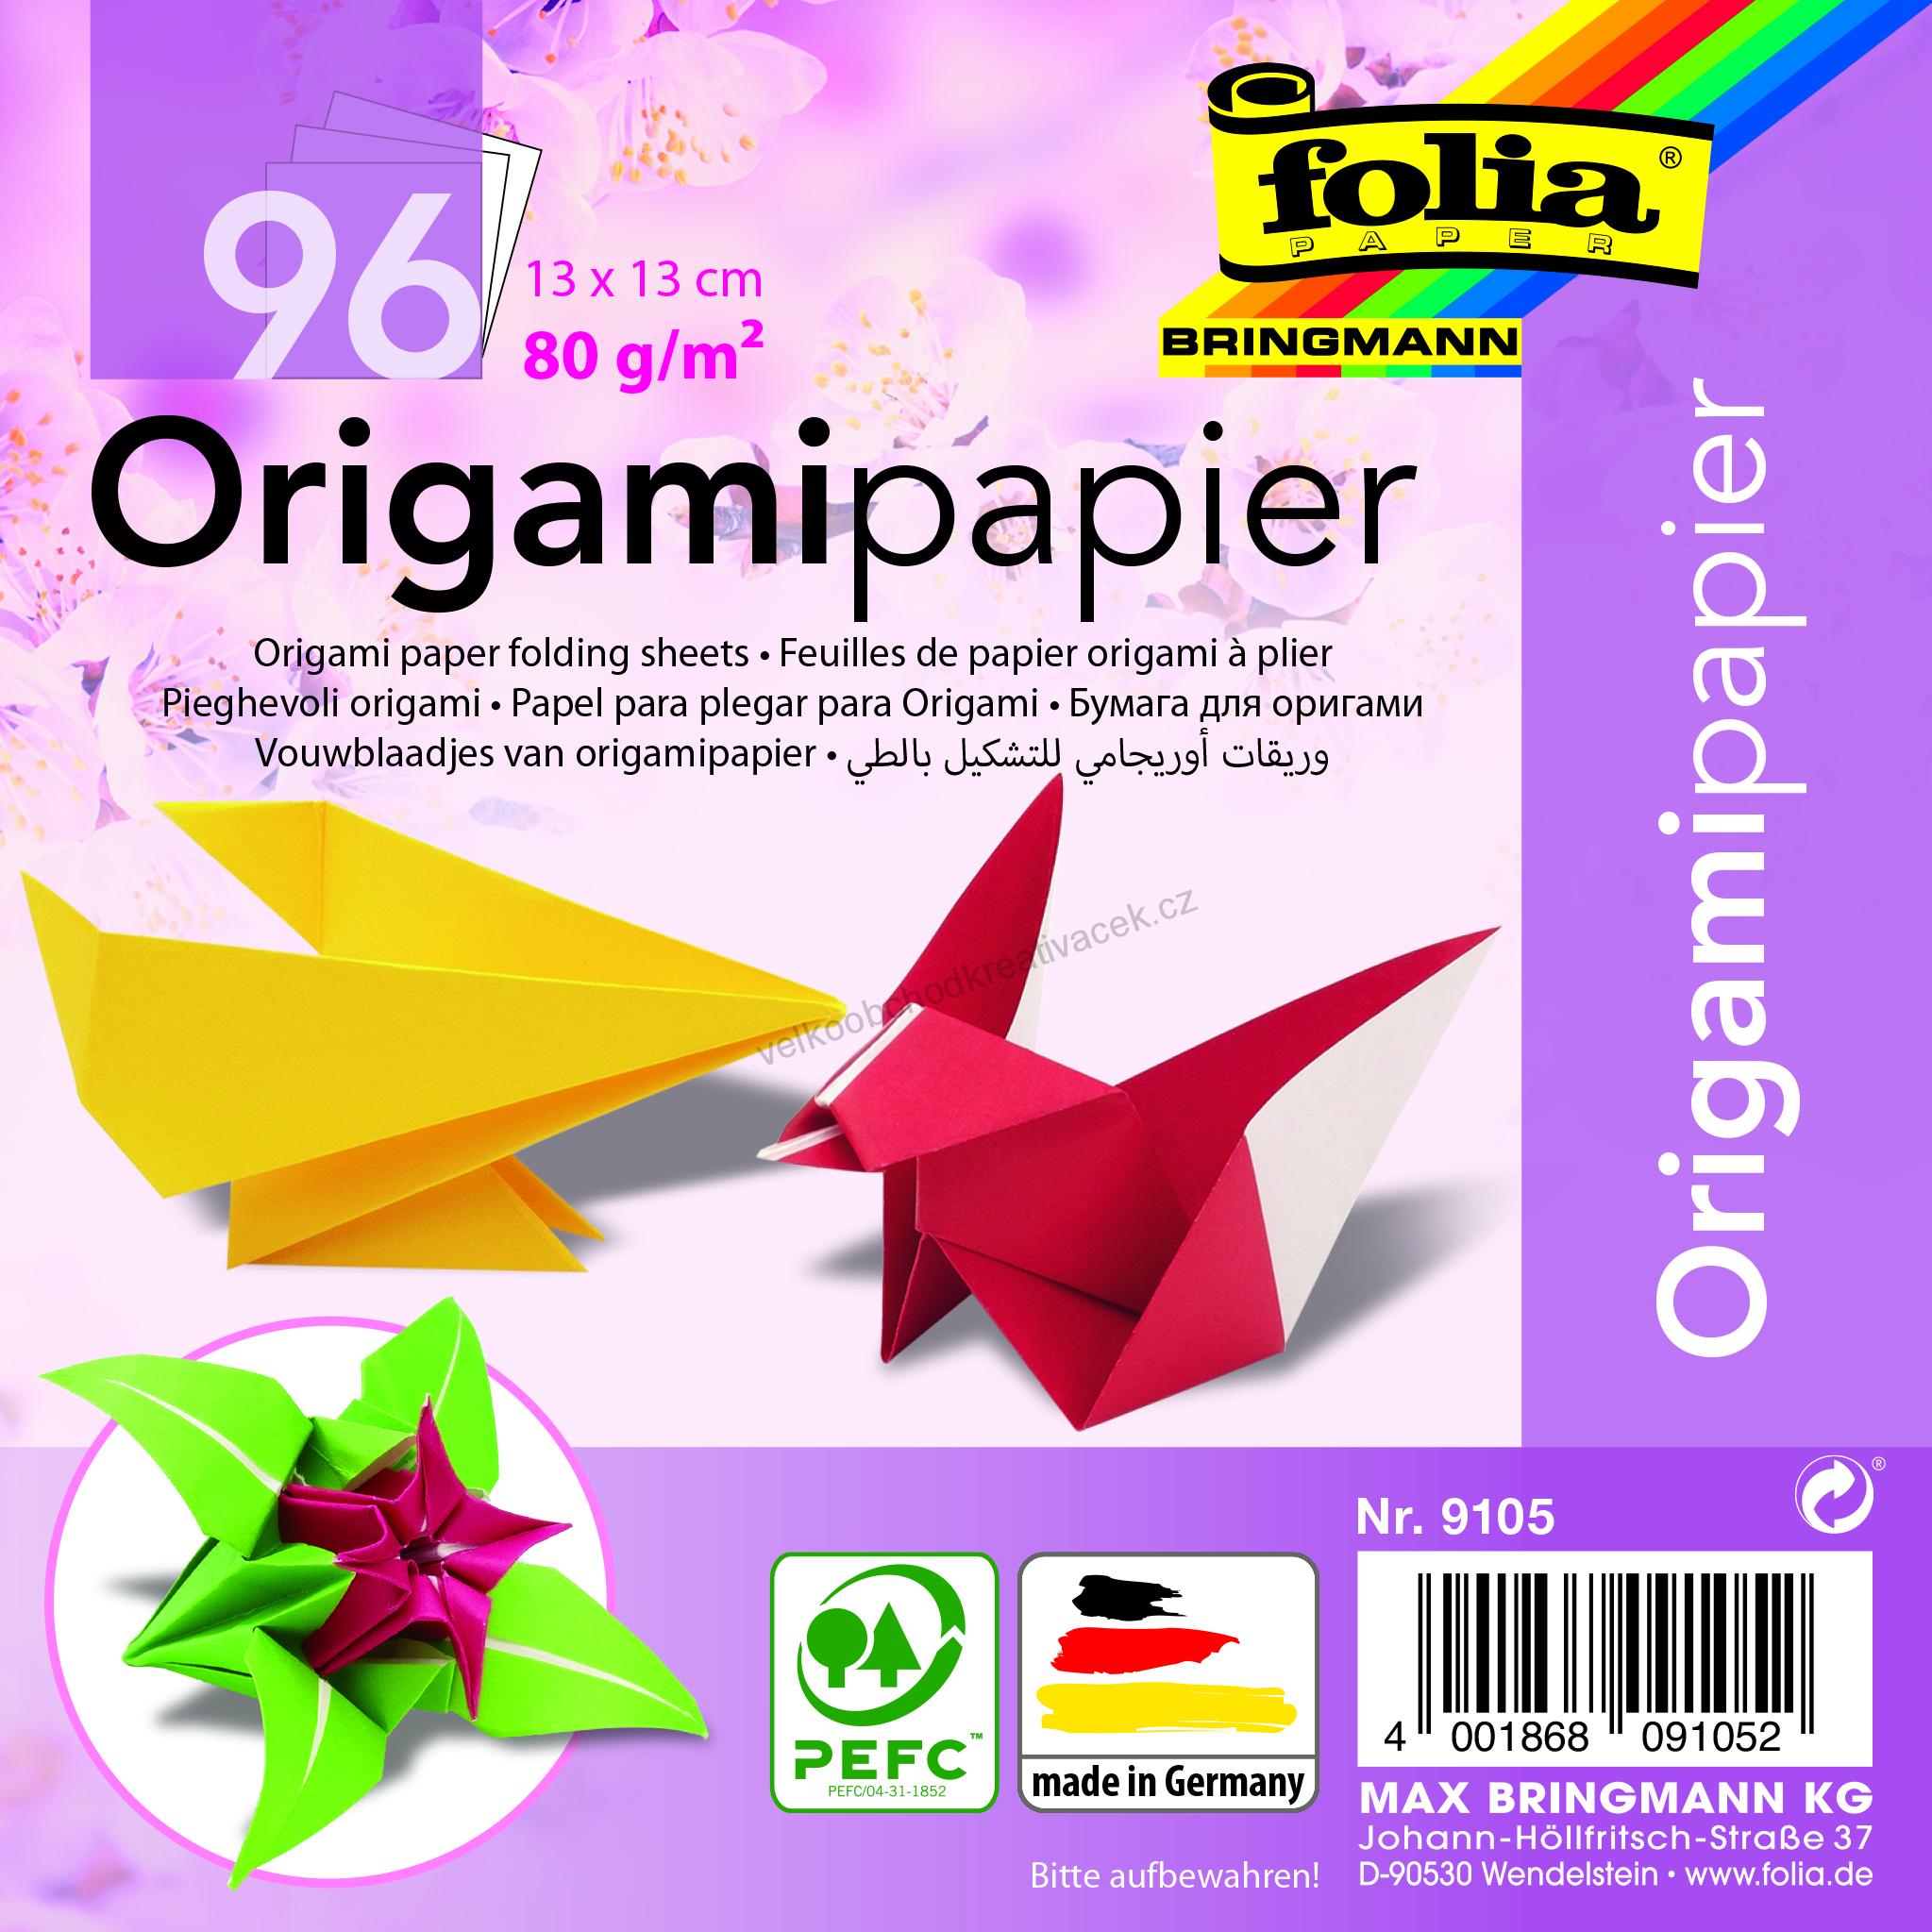 Origami papír - 13 x13 cm -  96 listů ve 12 barvách